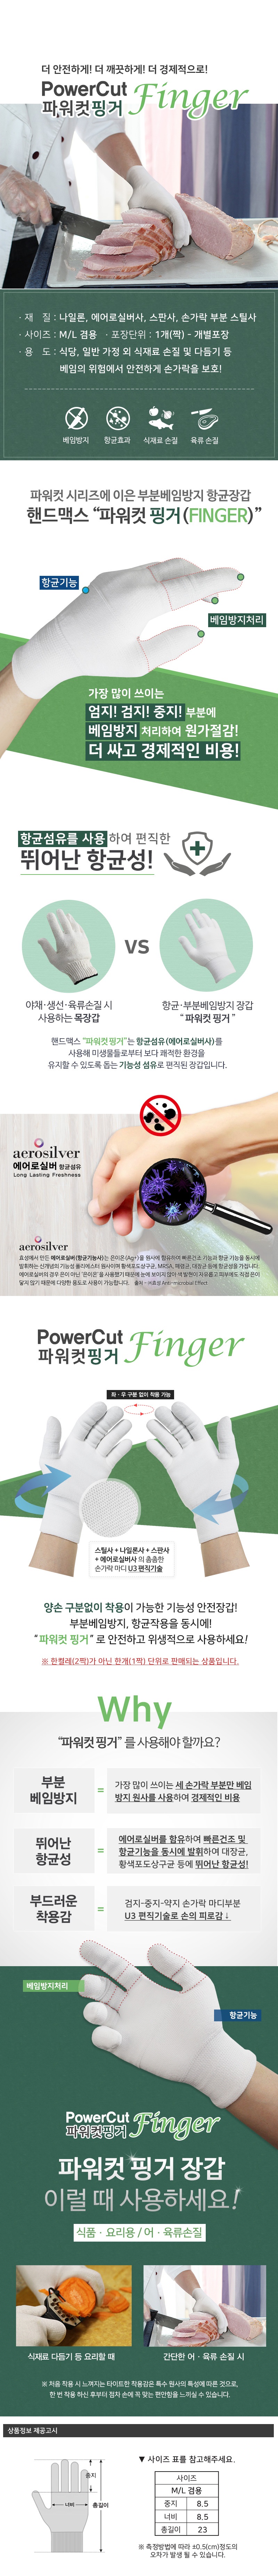 powercut_finger.jpg